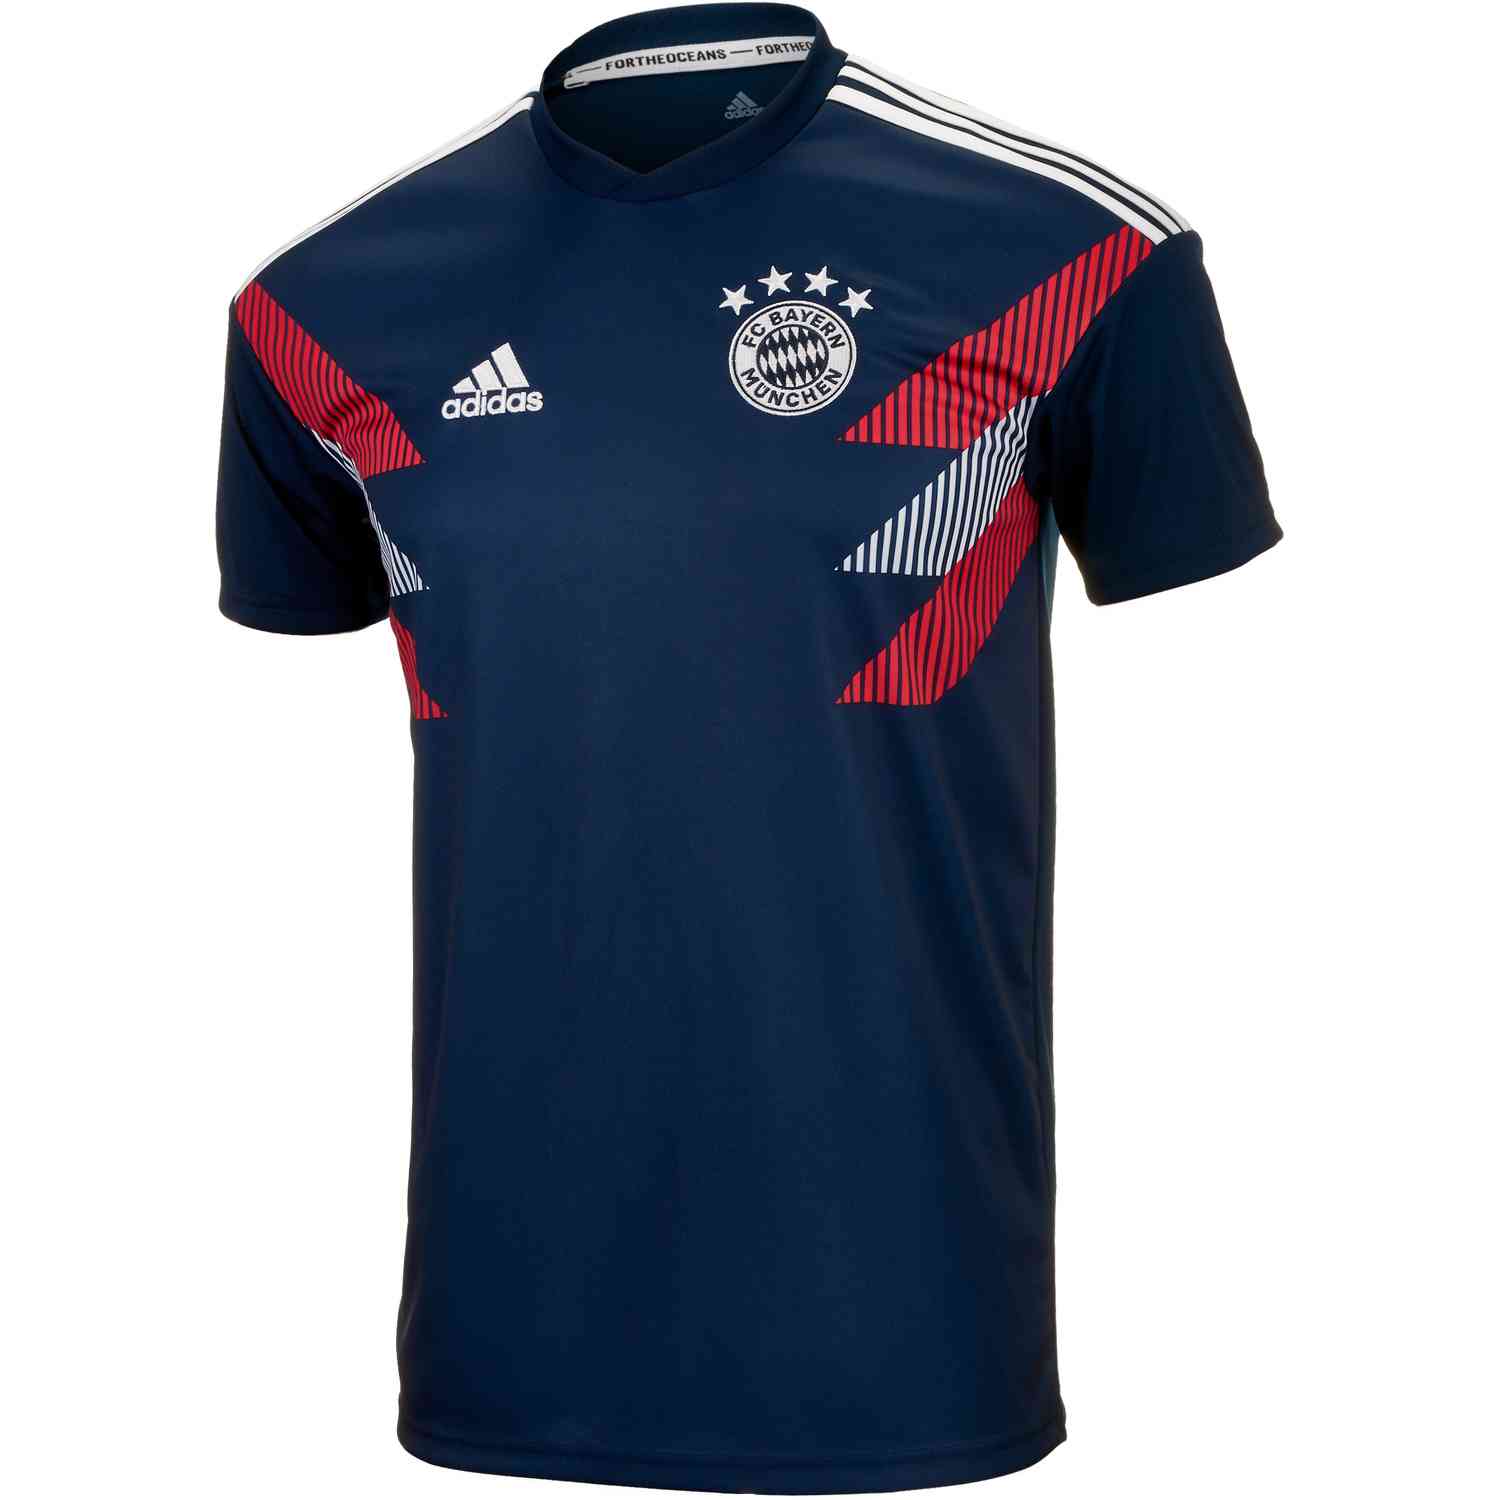 Adidas Bayern Munich Home Pre Match Jersey 2018 19 Soccerpro